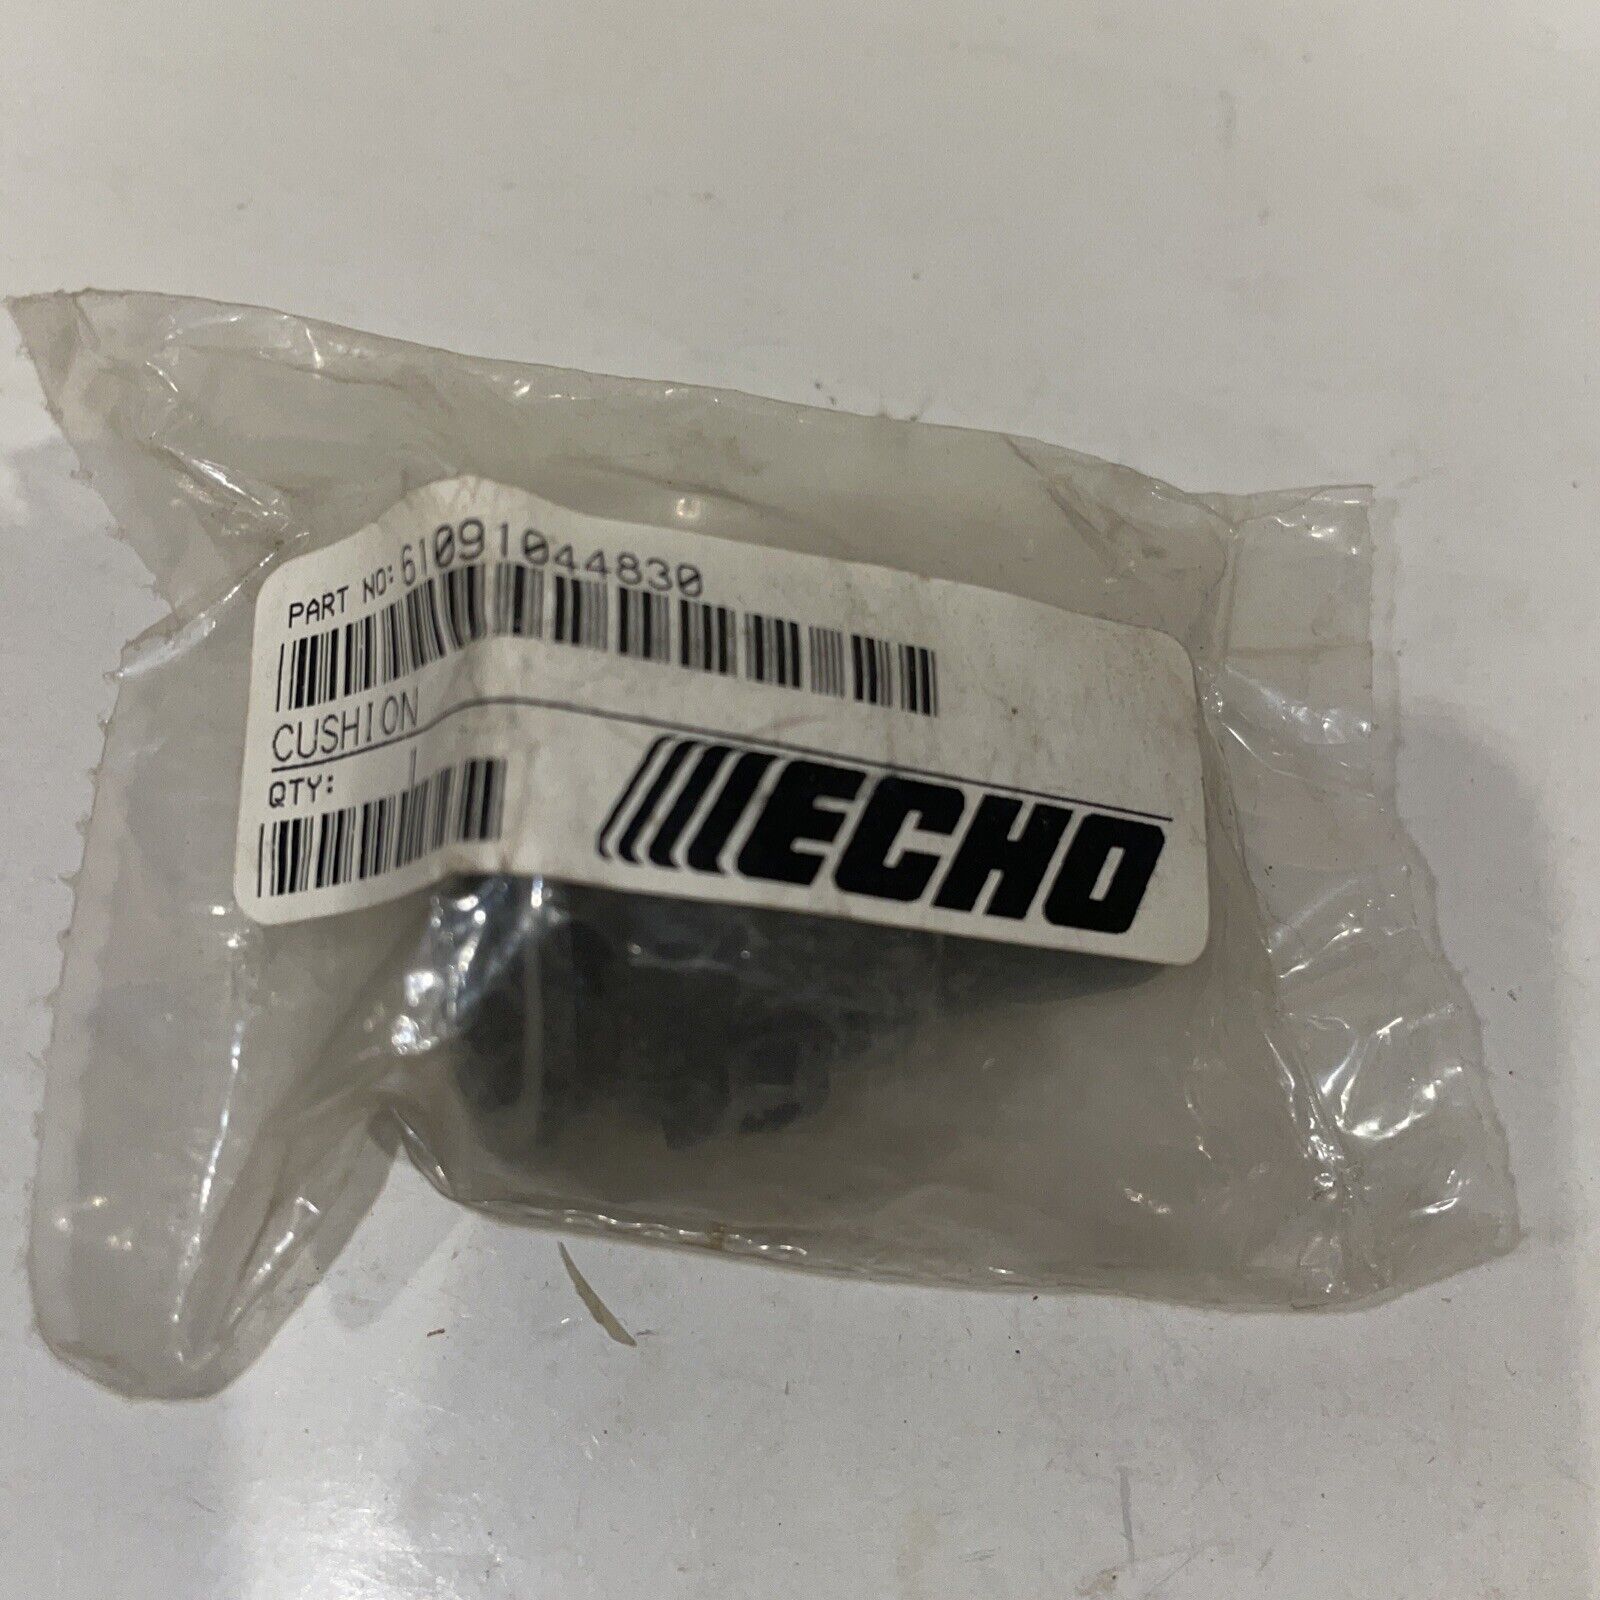 Echo 61091044830 Cushion OEM NOS - $10.89